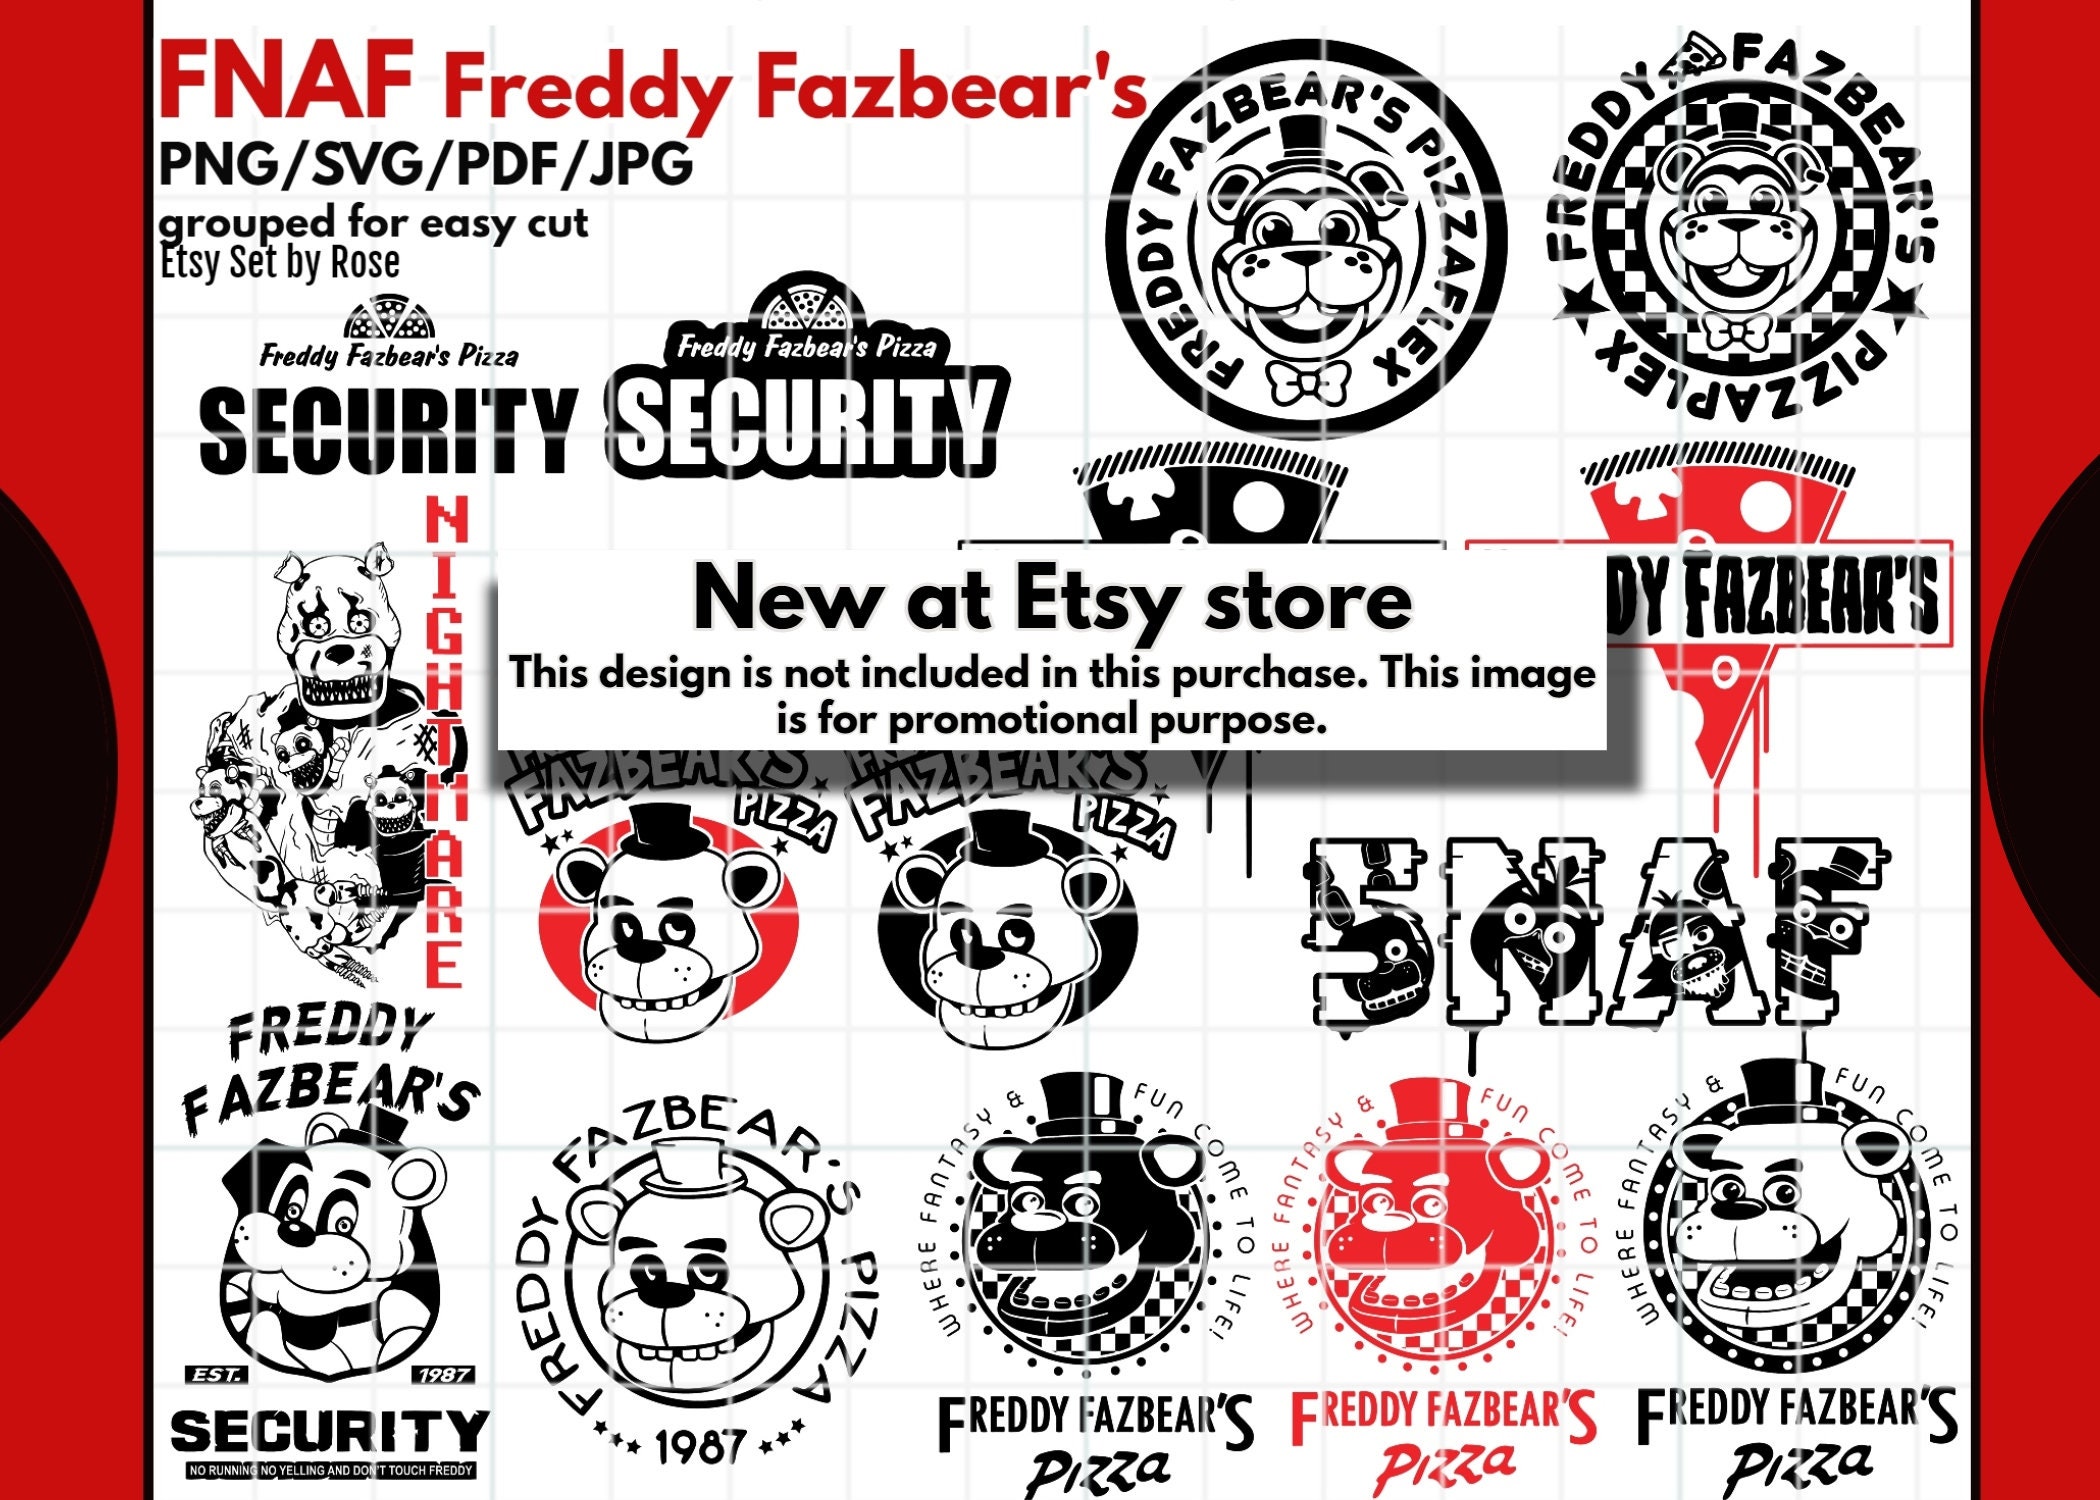 Fnaf Svg Five Nights Freddy Svg Freddy Svg Five (Instant Download) 